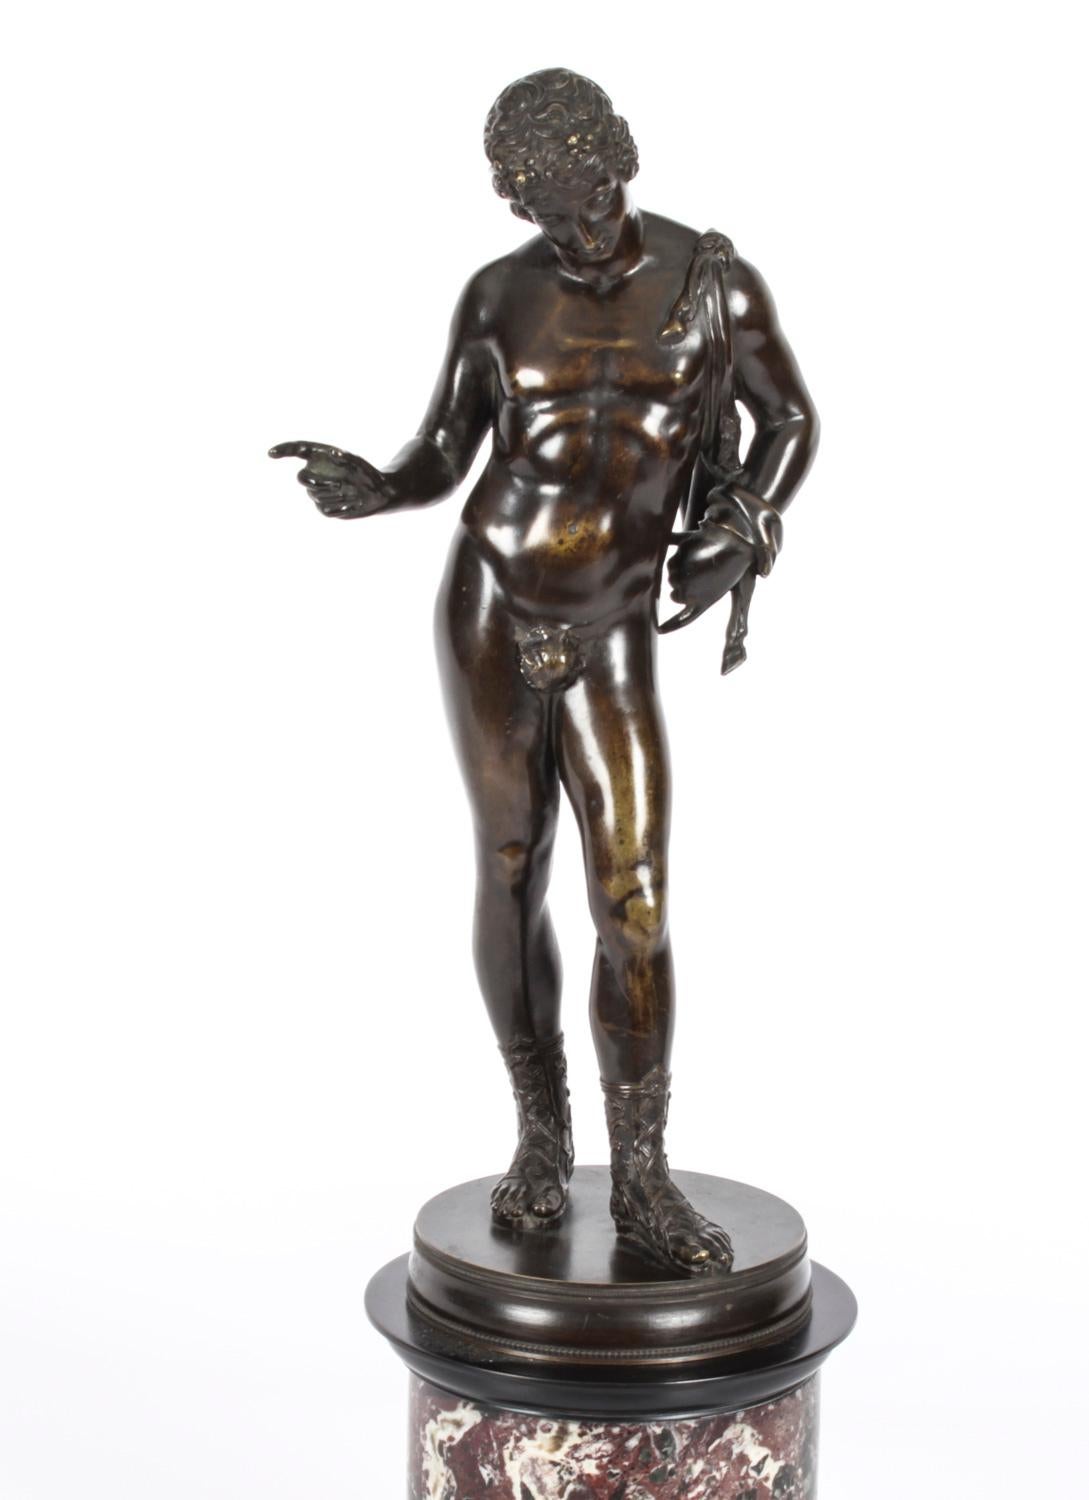 Dies ist eine hervorragende große antike Grand Tour patinierte Bronze-Version von David, aus der Mitte des 19. Jahrhunderts.
 
Die Bronzestatue stellt David mit einem rätselhaften Lächeln dar, der mit einem Fuß nach vorne posiert.
Der Jüngling